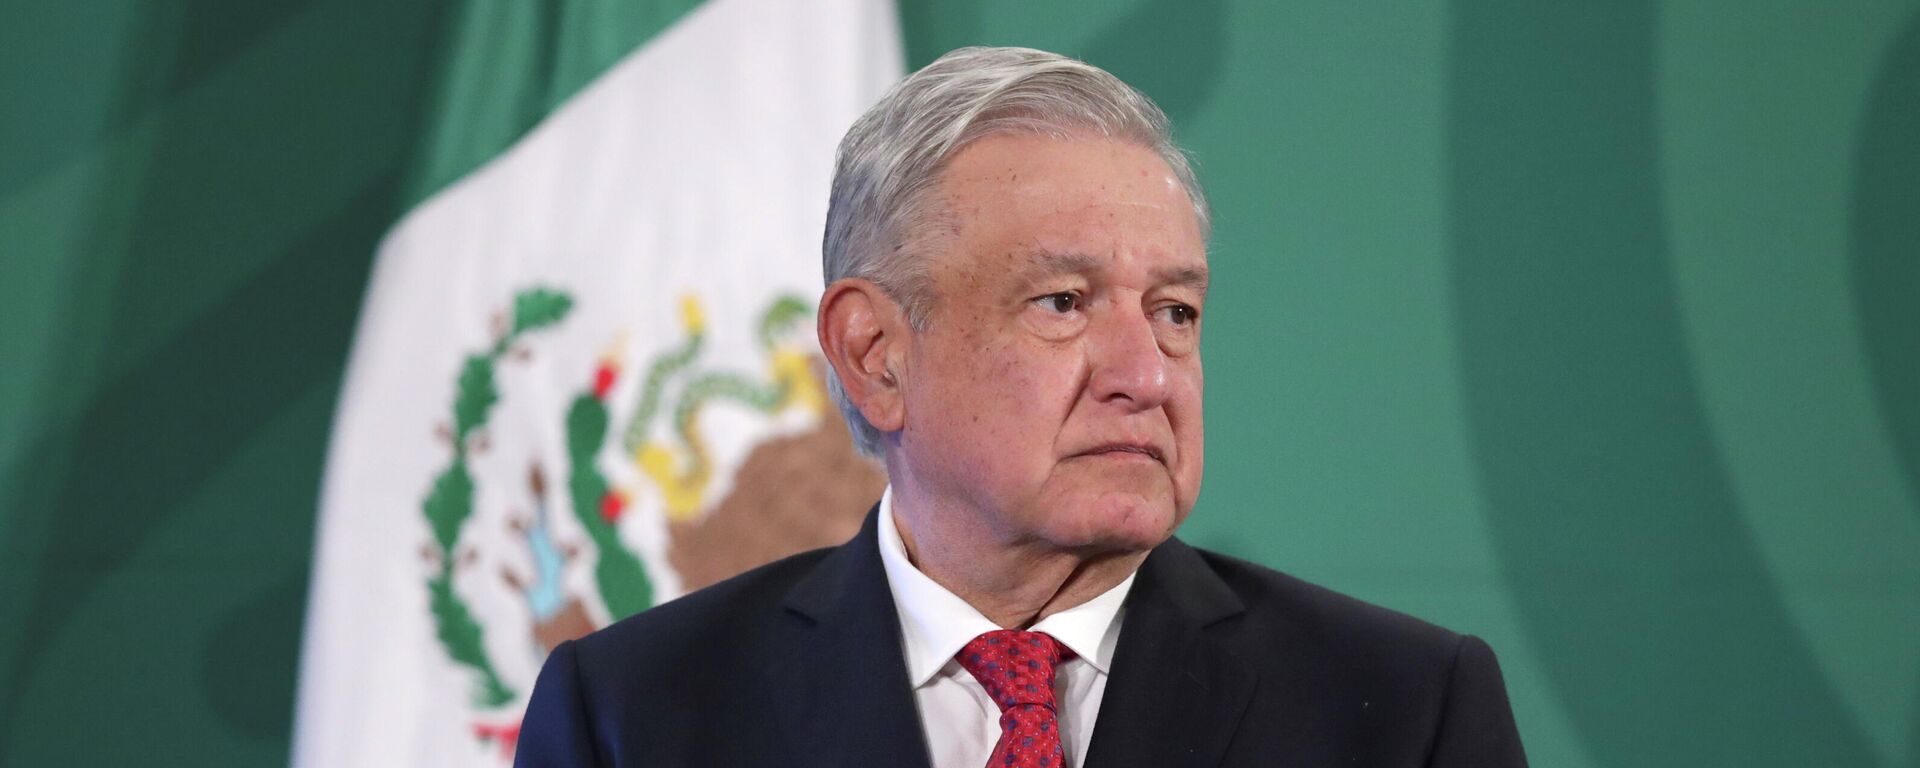 Andrés Manuel López Obrador, presidente de México - Sputnik Mundo, 1920, 31.08.2021